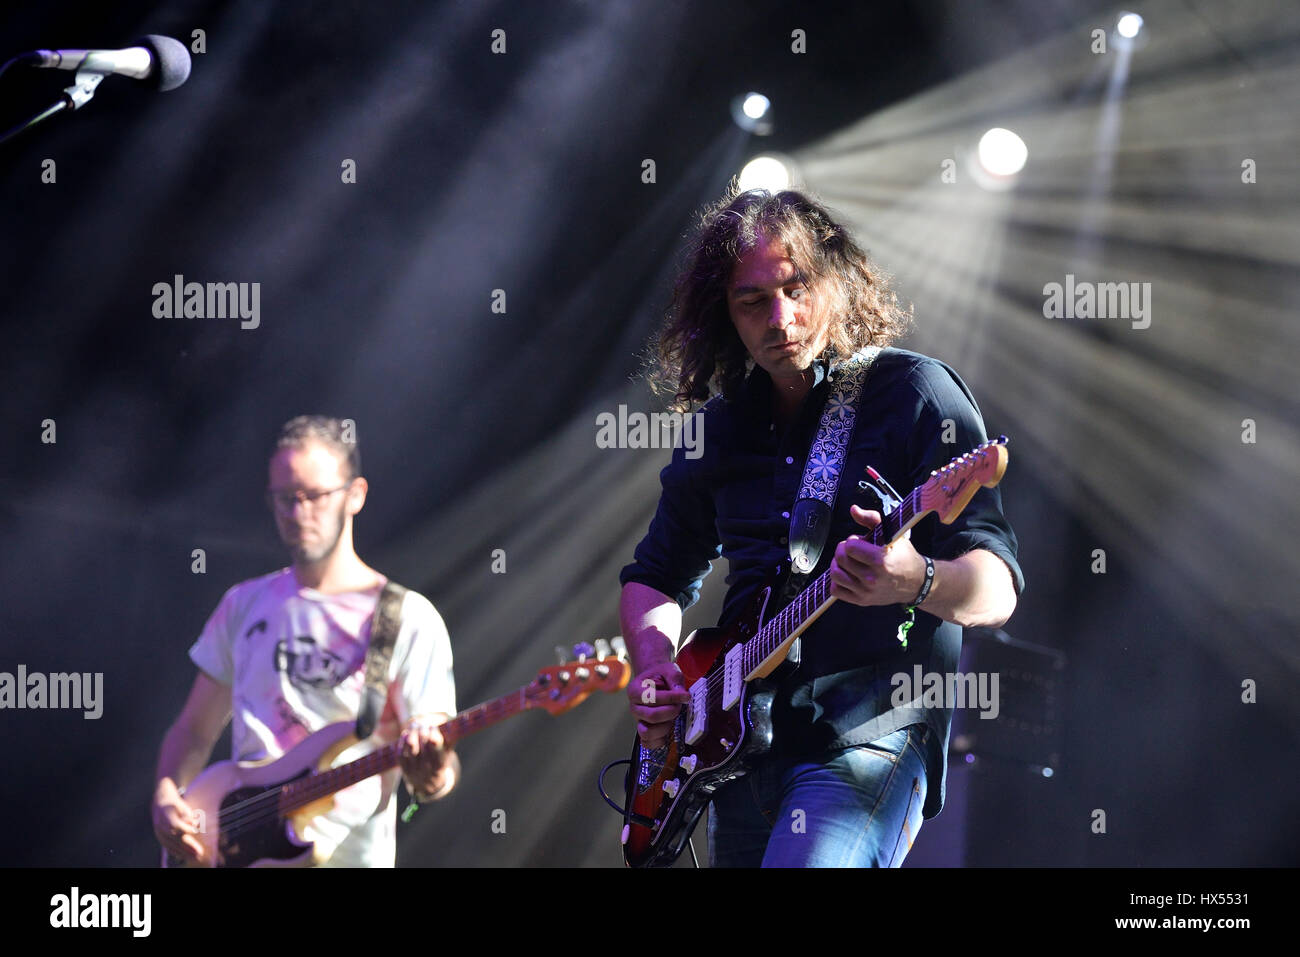 Barcellona - Lug 3: La guerra alla droga (banda) in concerto presso il Vida Festival il 3 luglio 2015 a Barcellona, Spagna. Foto Stock